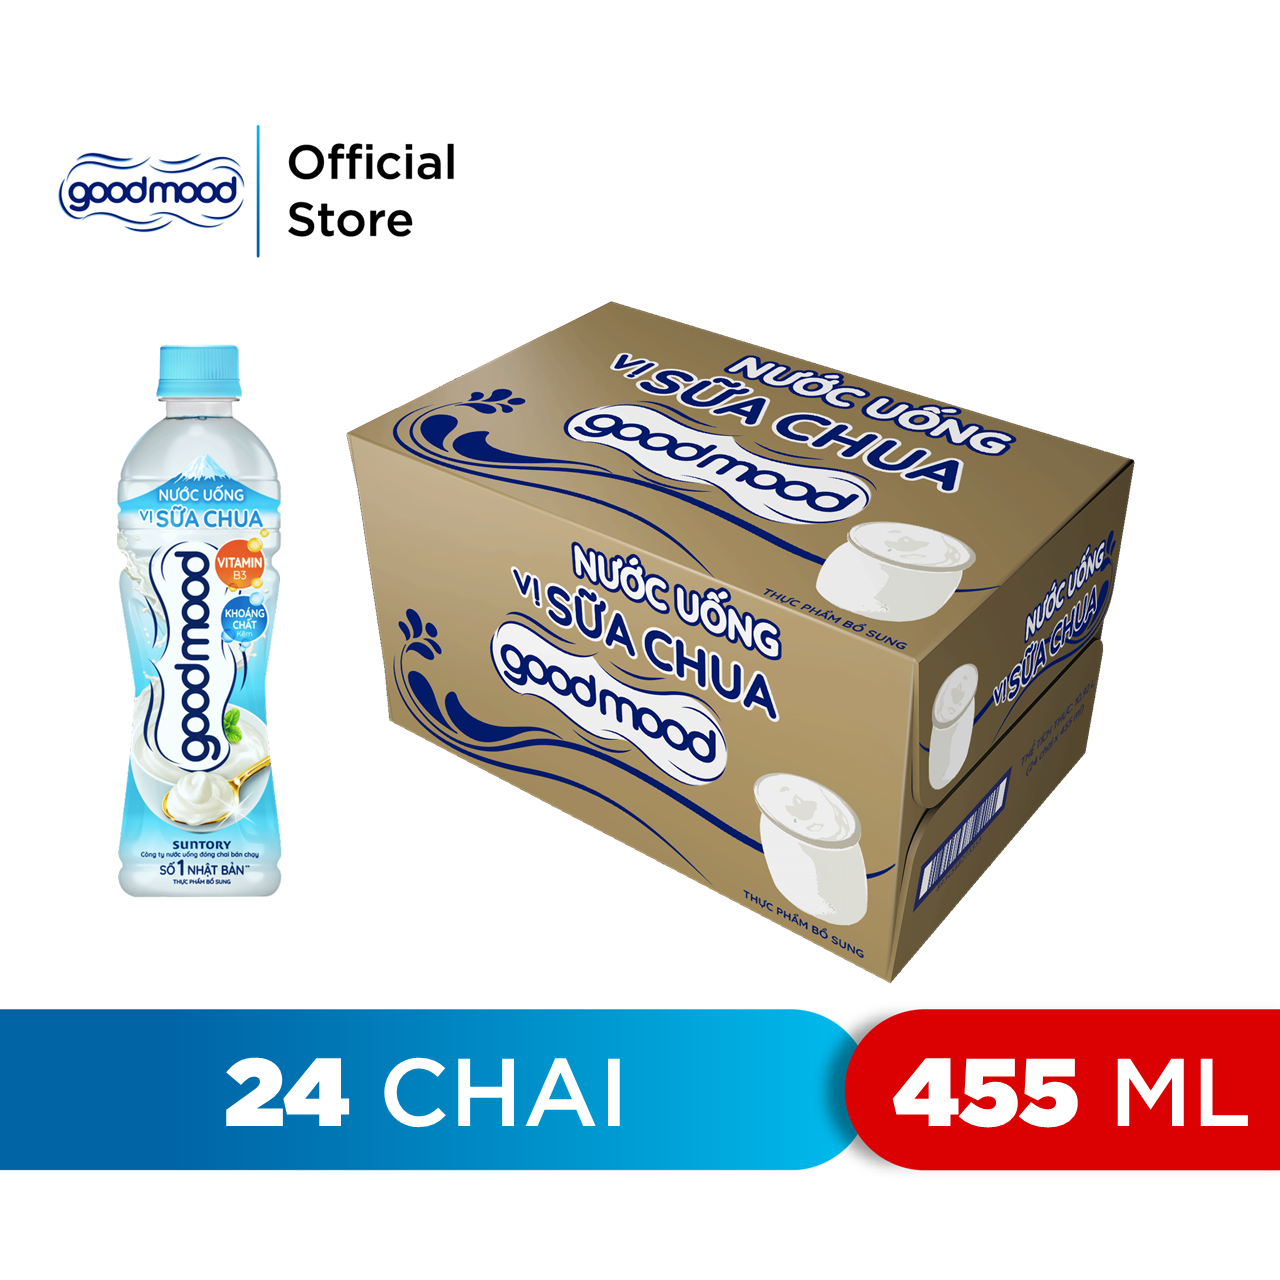 HCM - FREESHIP Thùng 24 Chai Nước Uống Vị Sữa Chua Goodmood 455ml chai